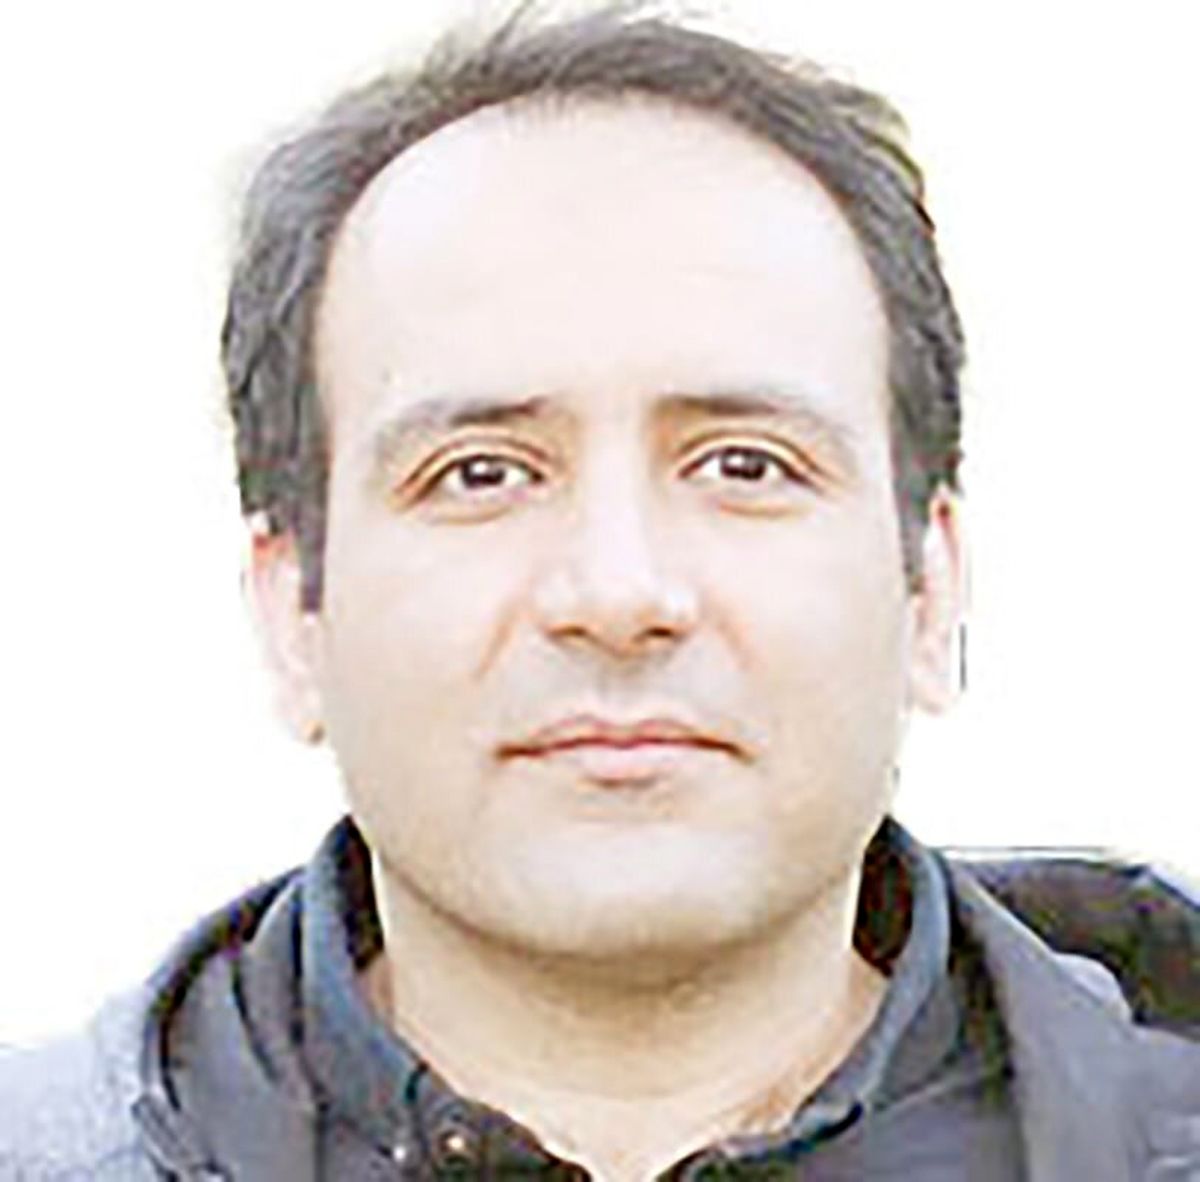 مجید توکلی از تعویق اجرای حکم خود خبر داد